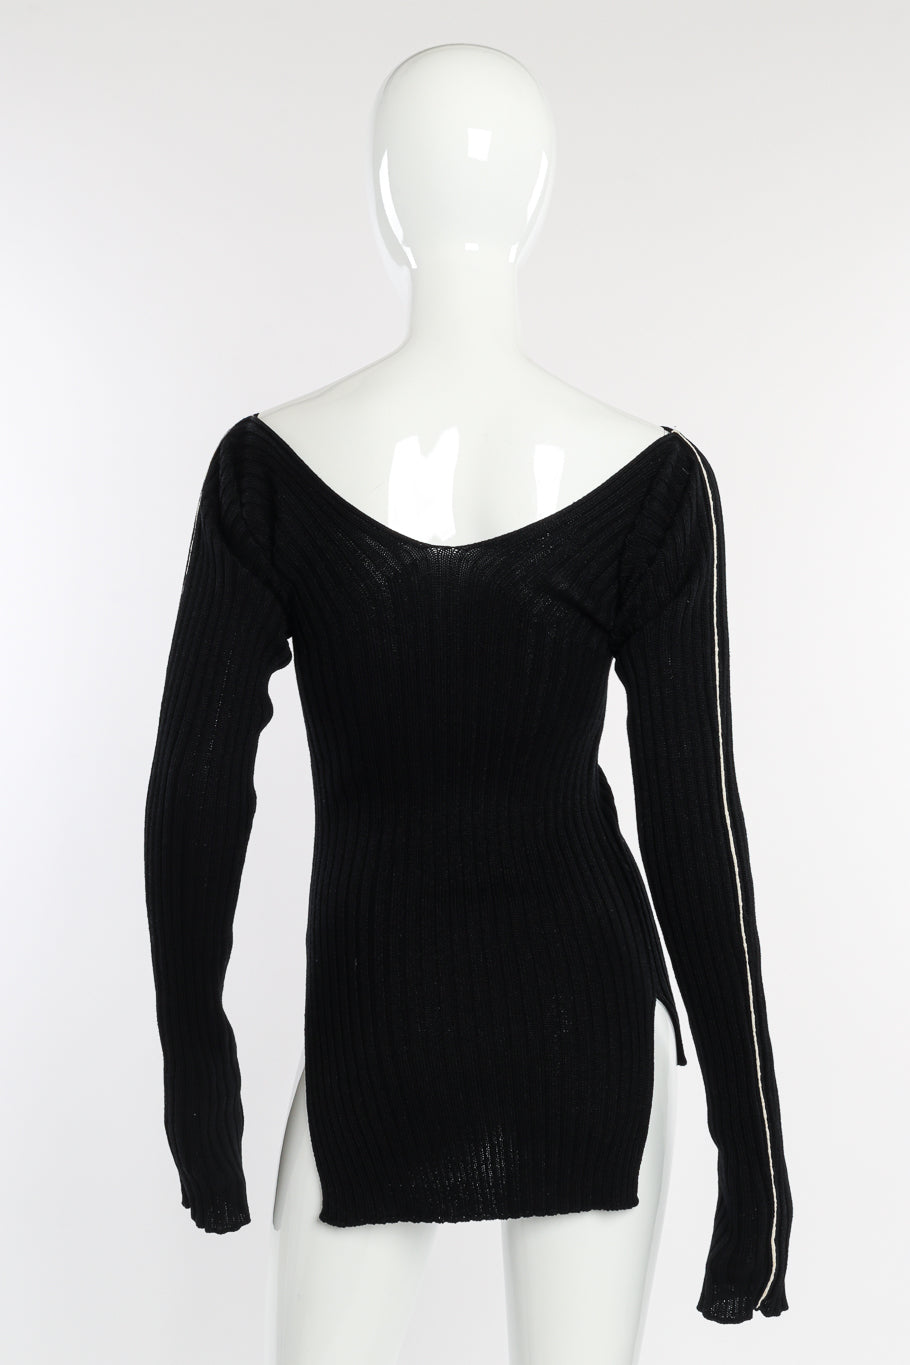 Celine Ribbed Knit Sweater Dress back on mannequin @recessla